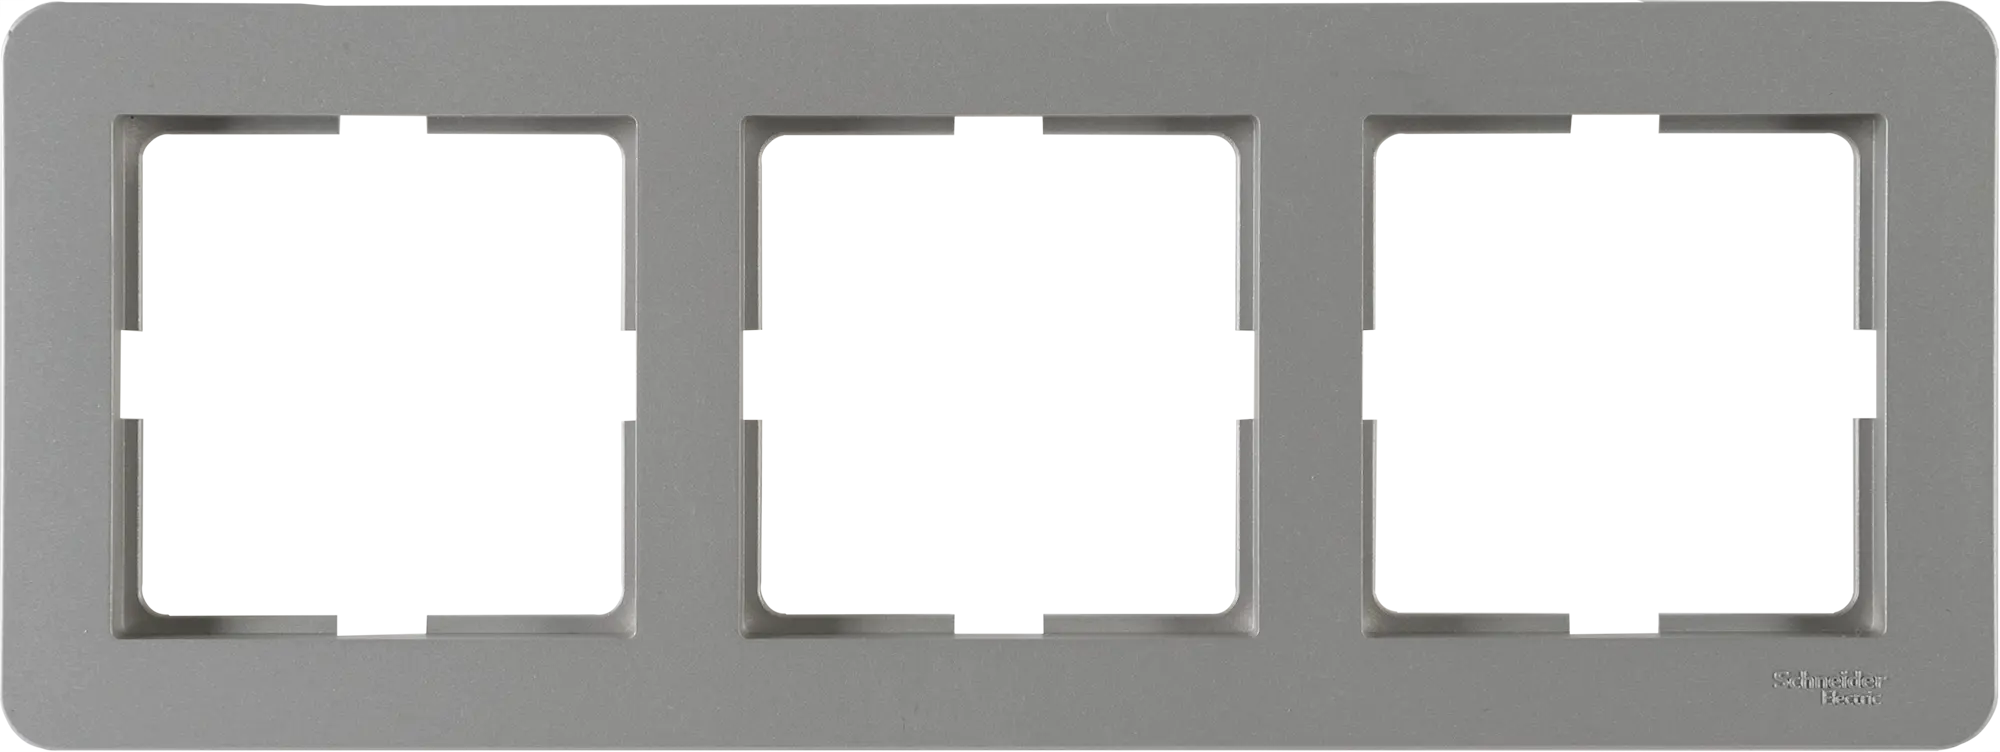 Рамка для розеток и выключателей Schneider Electric W59 Deco 3 поста, цвет платина лицевая панель для двух сенсорных выключателей 3 клавиши livolo bb c7 c1 c2 13